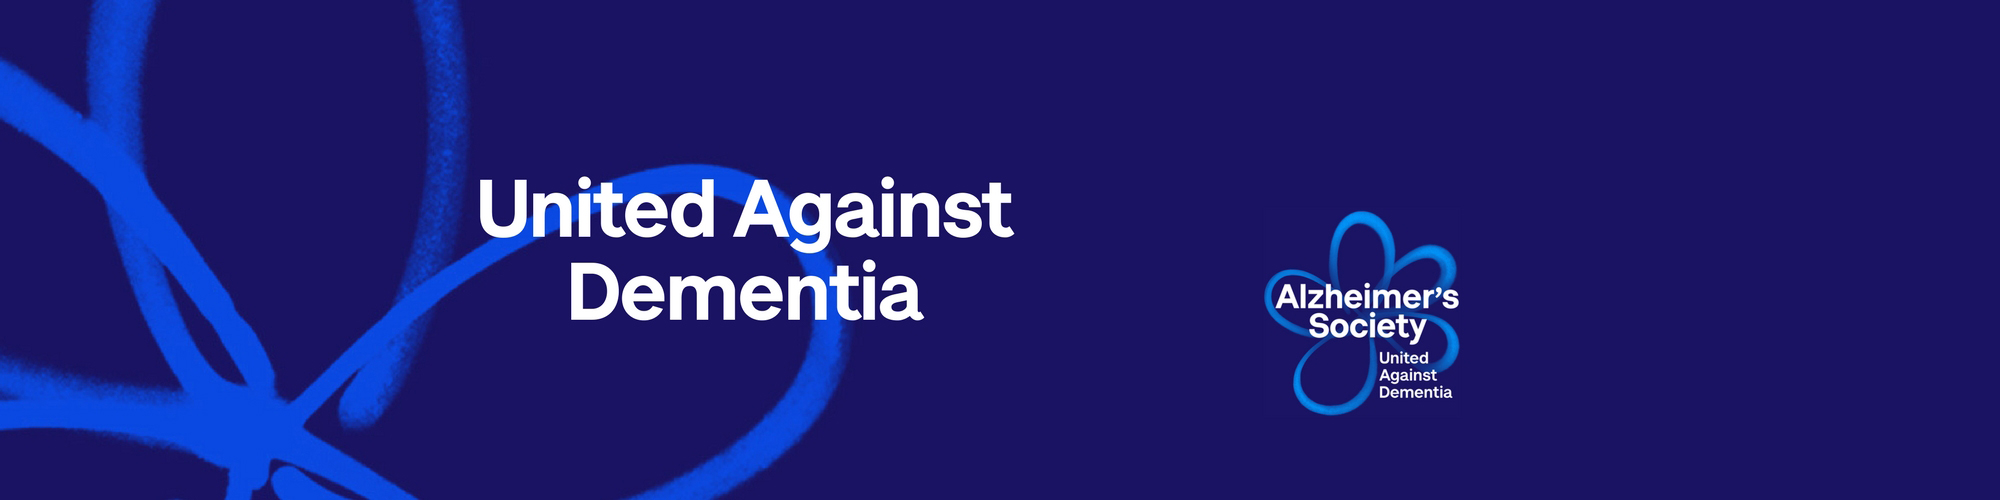 Alzheimer's Society banner